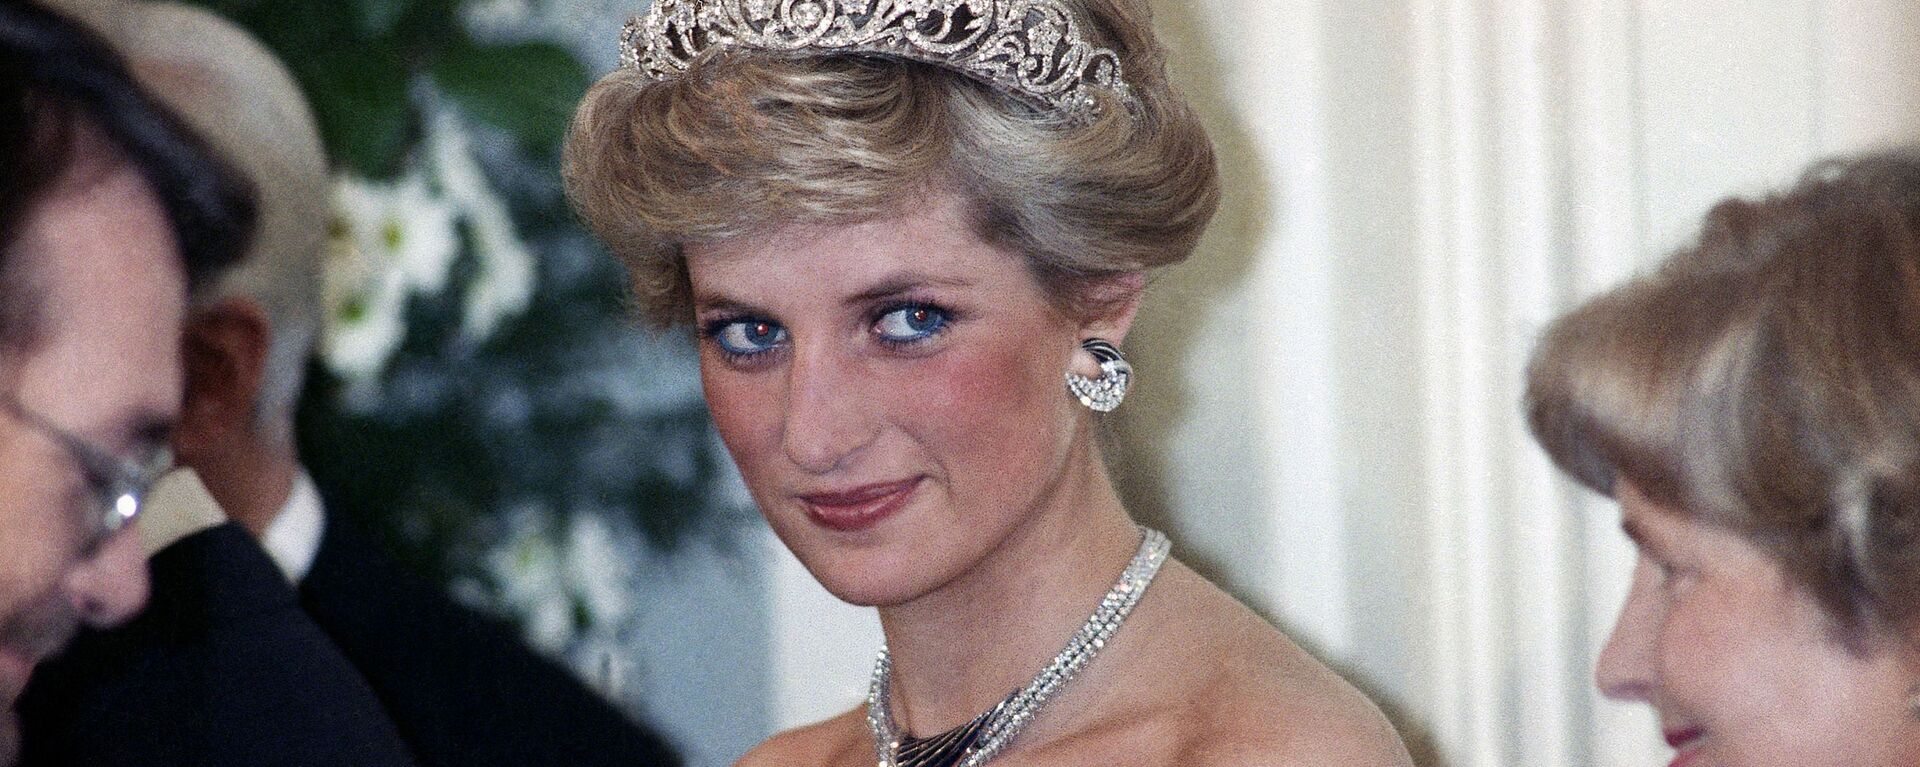 Принцесса Диана на вечернем приеме в честь членов королевской семьи в Бонне,  Германия, 1987 год - Sputnik International, 1920, 23.05.2021